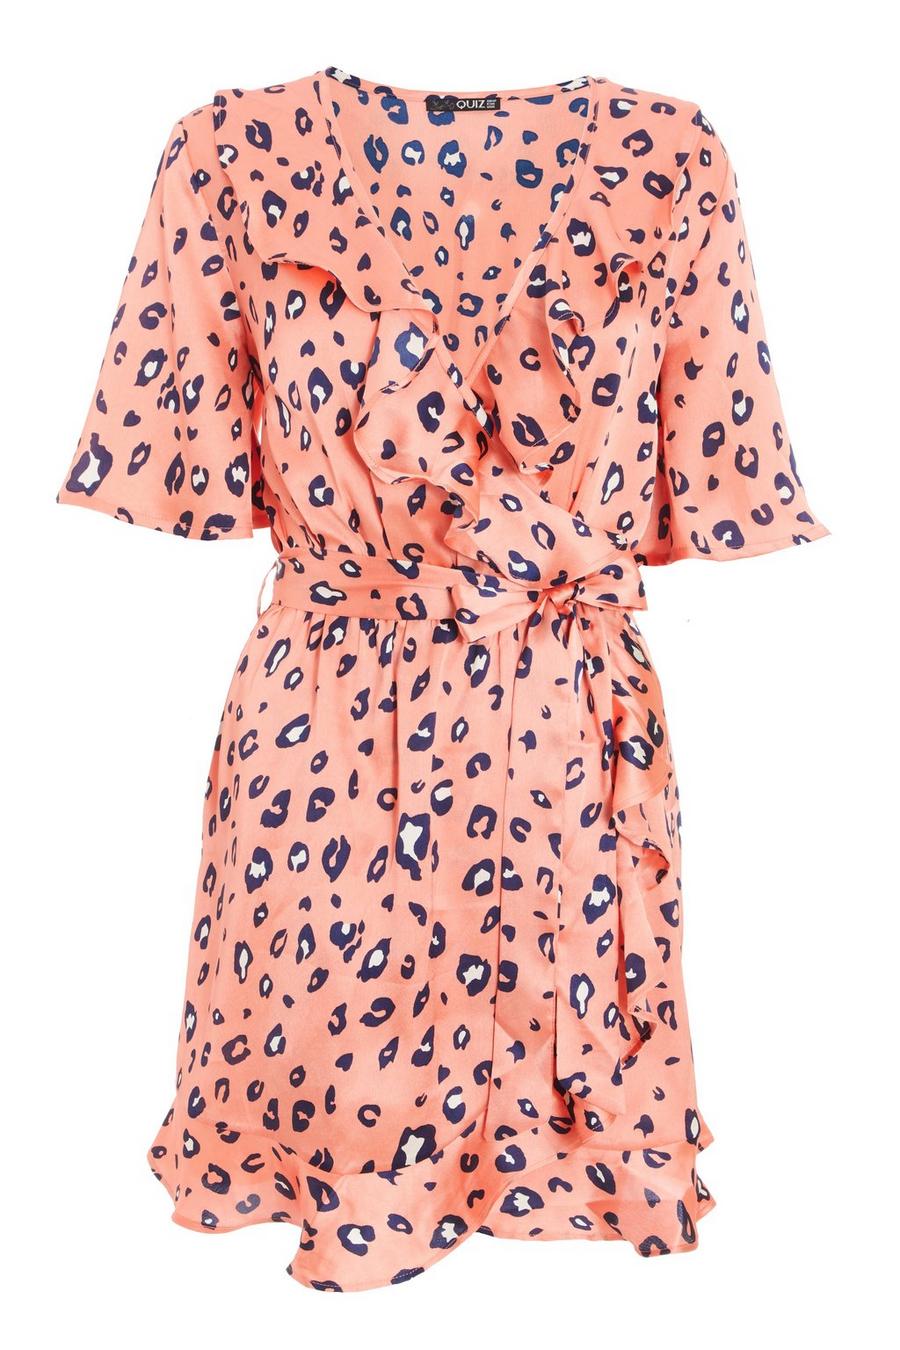 18+ Pink Leopard Print Dress